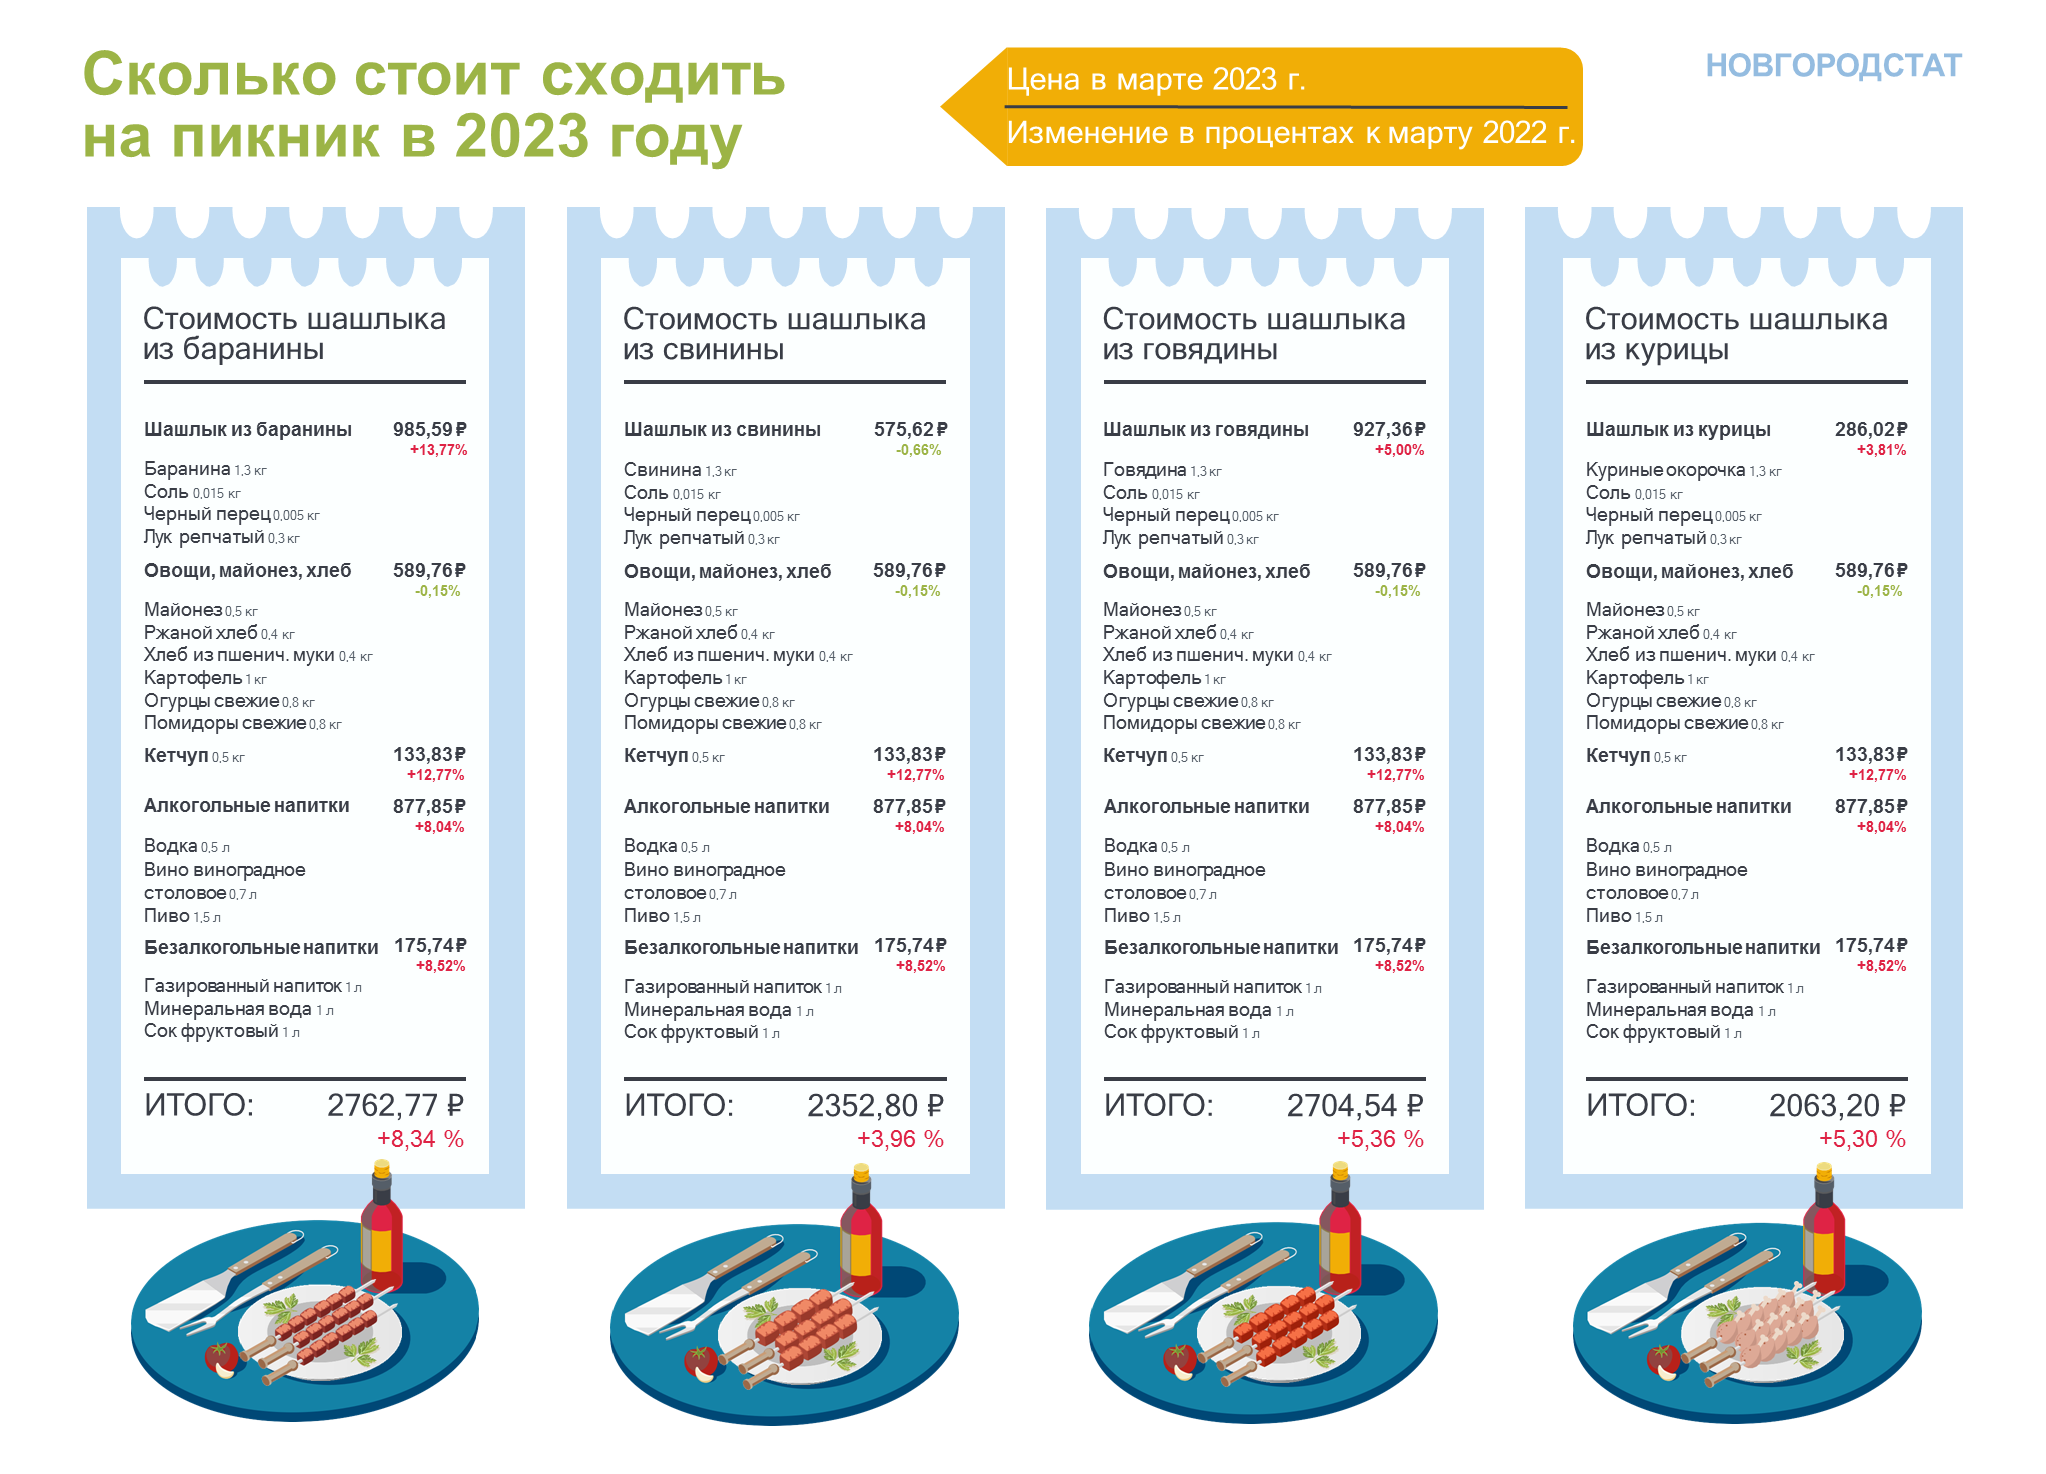 инфографика шашлык_Новгородстат_2